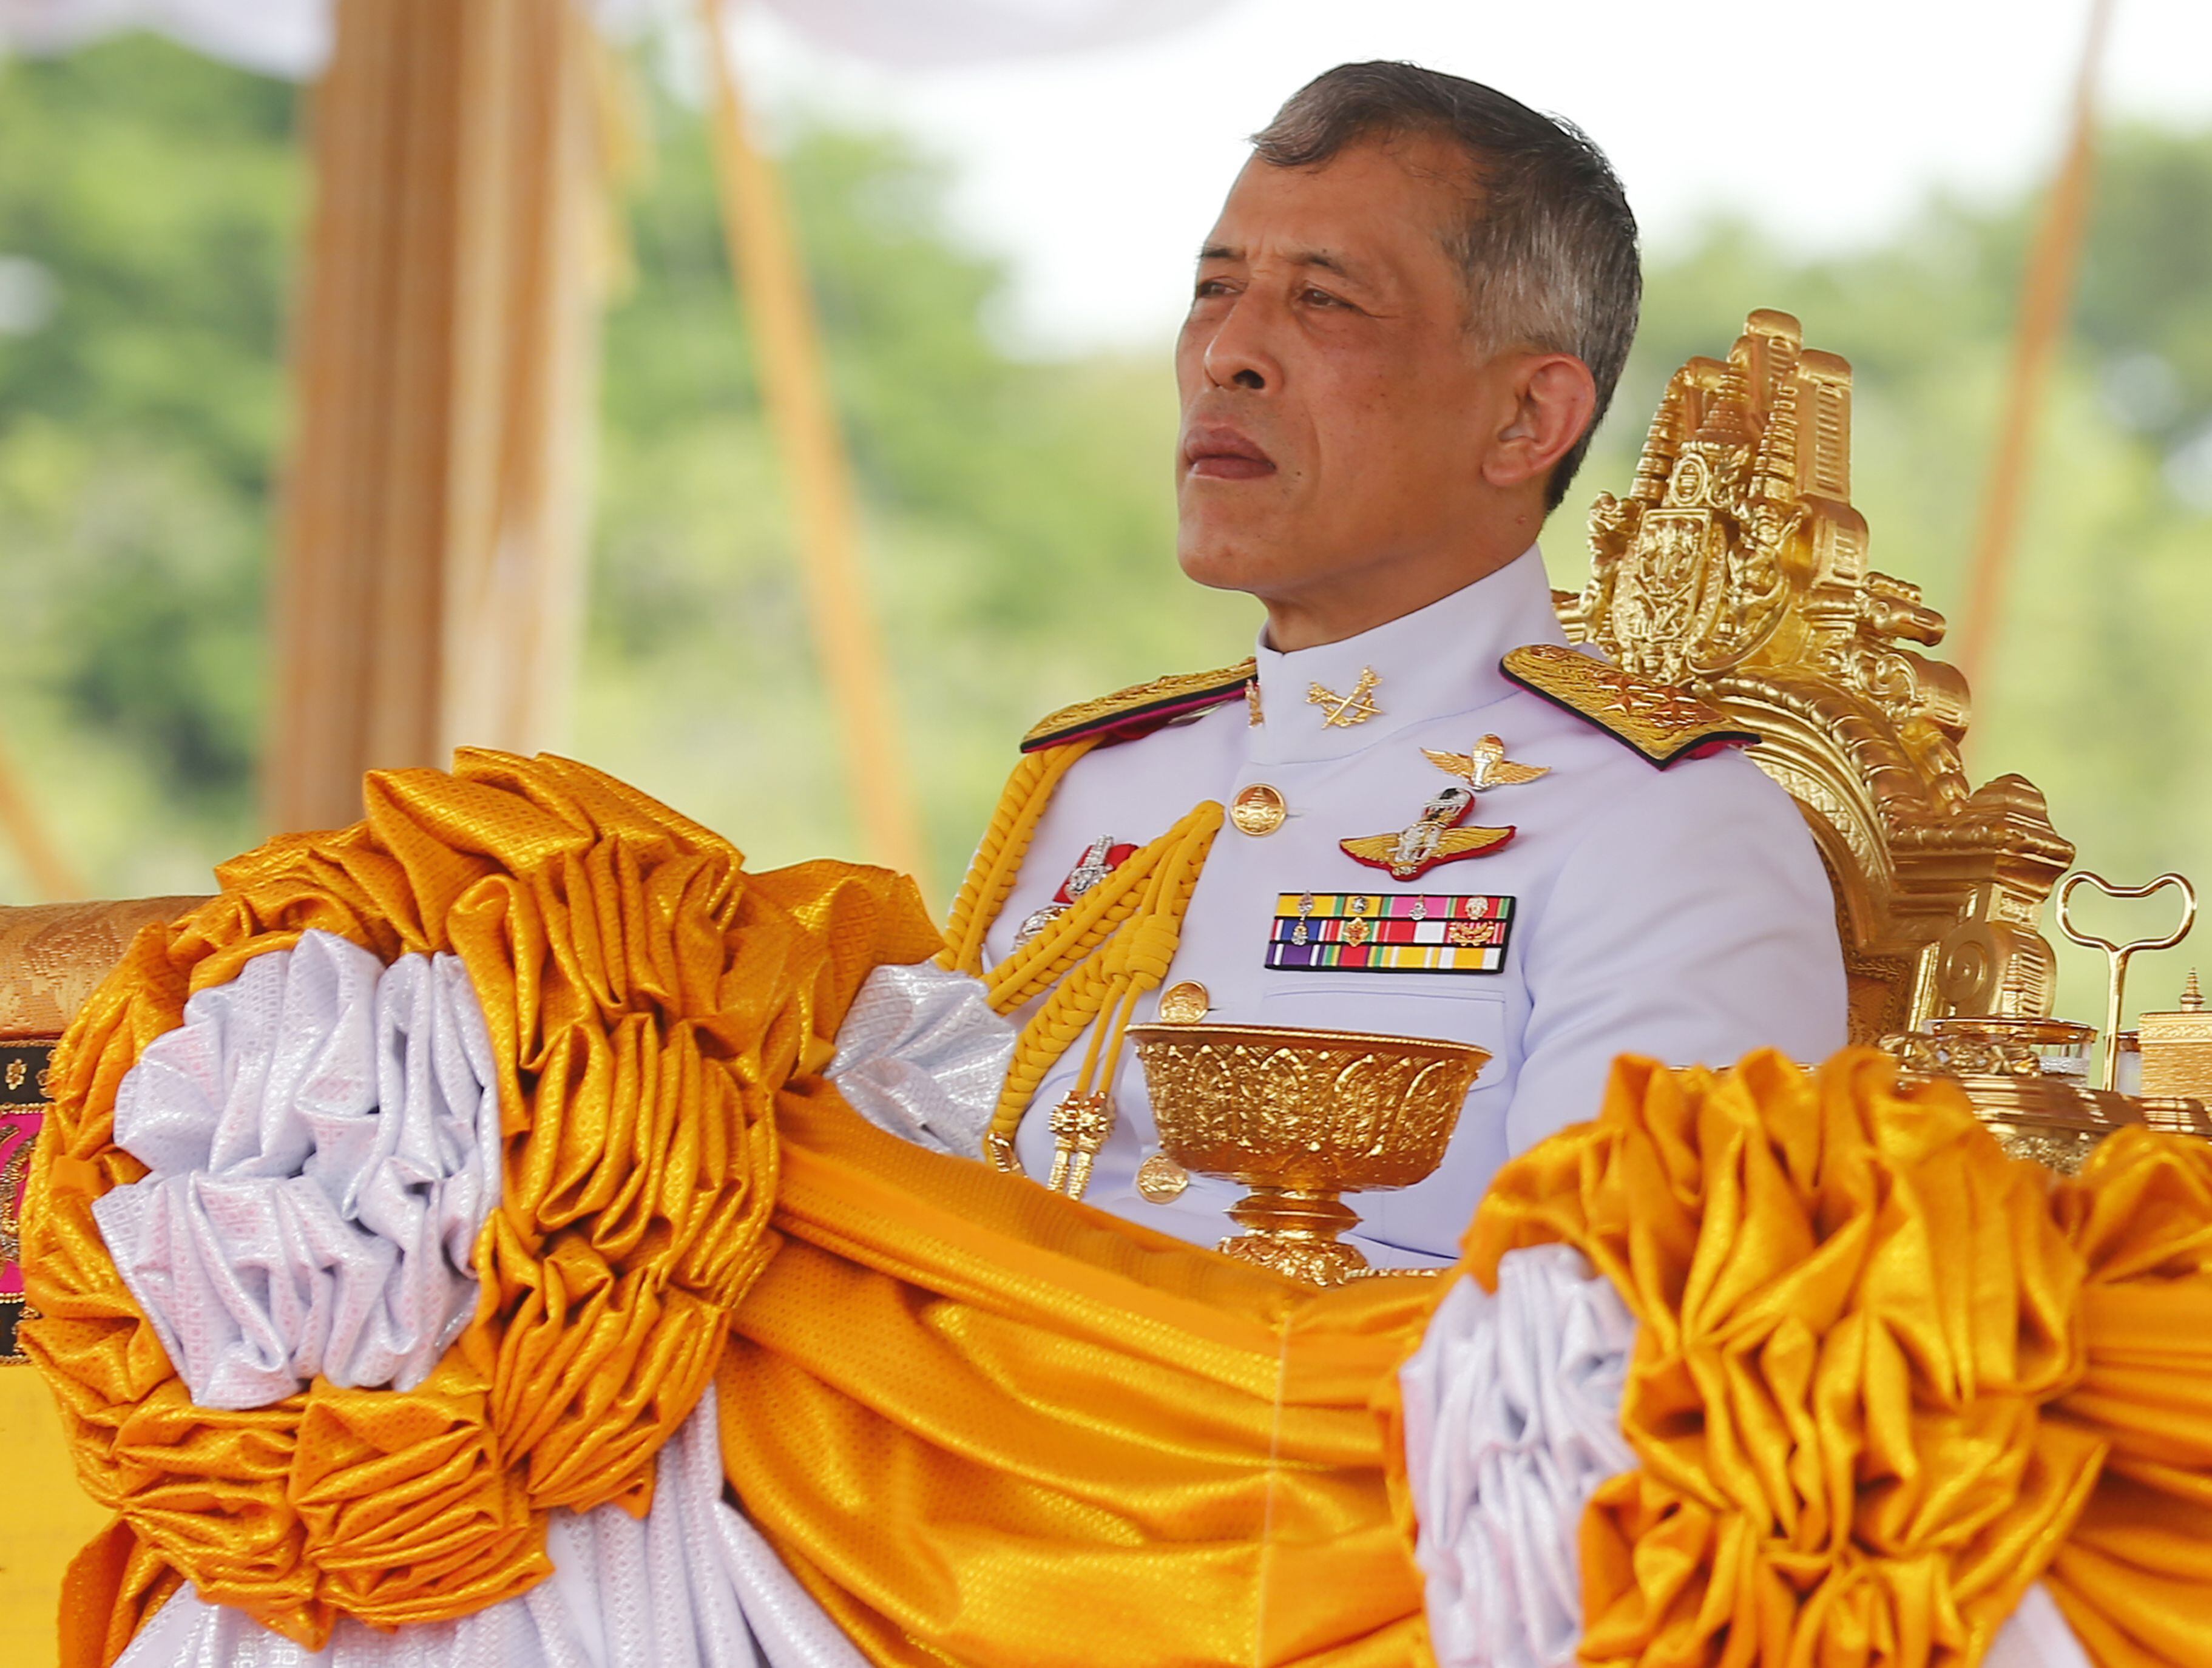 El rey de Tailandia, Maha Vajiralongkorn, en un acto oficial en Sanam Luang. Chaiwat Subprasom/SOPA Images vi / DPA 